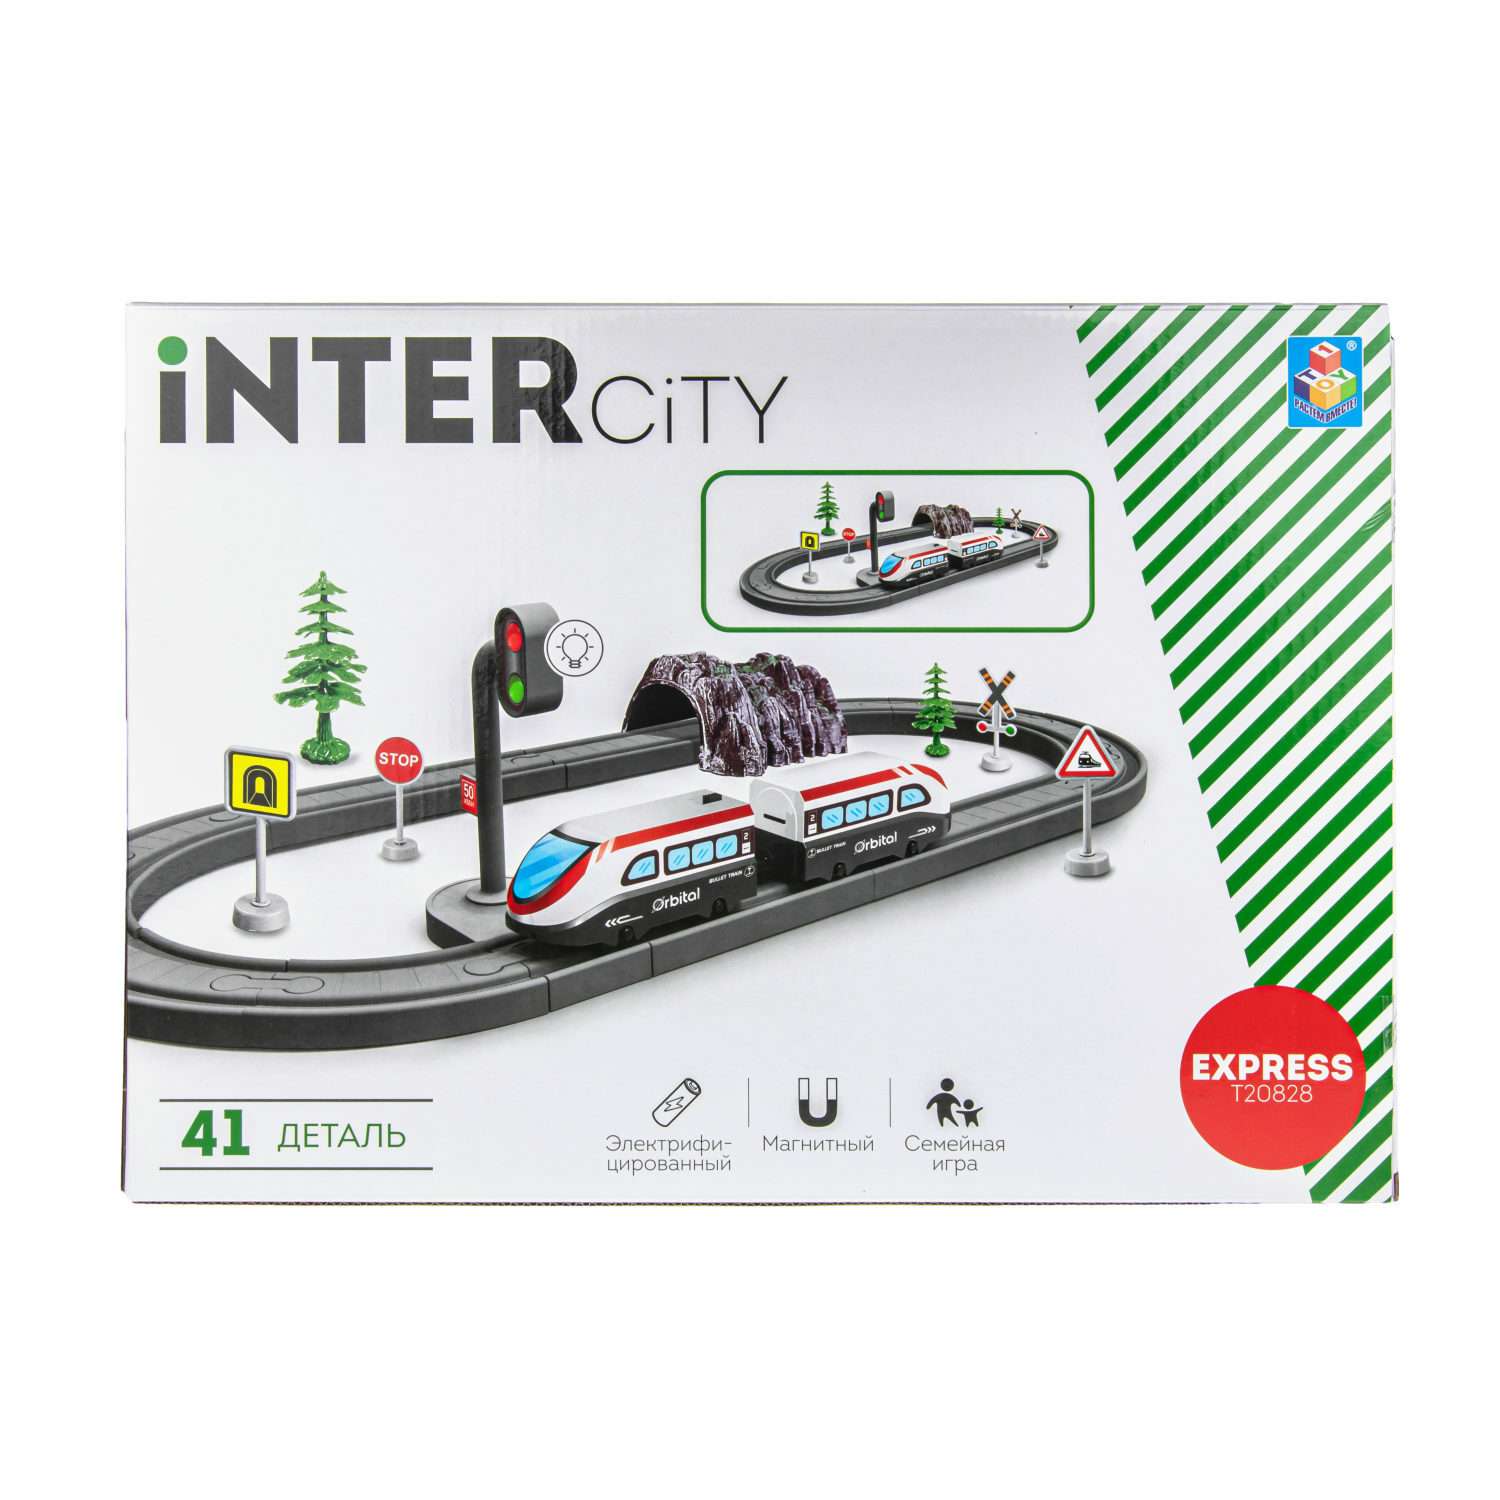 Игровой набор InterCity Железная дорога Стартовый набор с поездом и аксессуарами Т20828 - фото 10